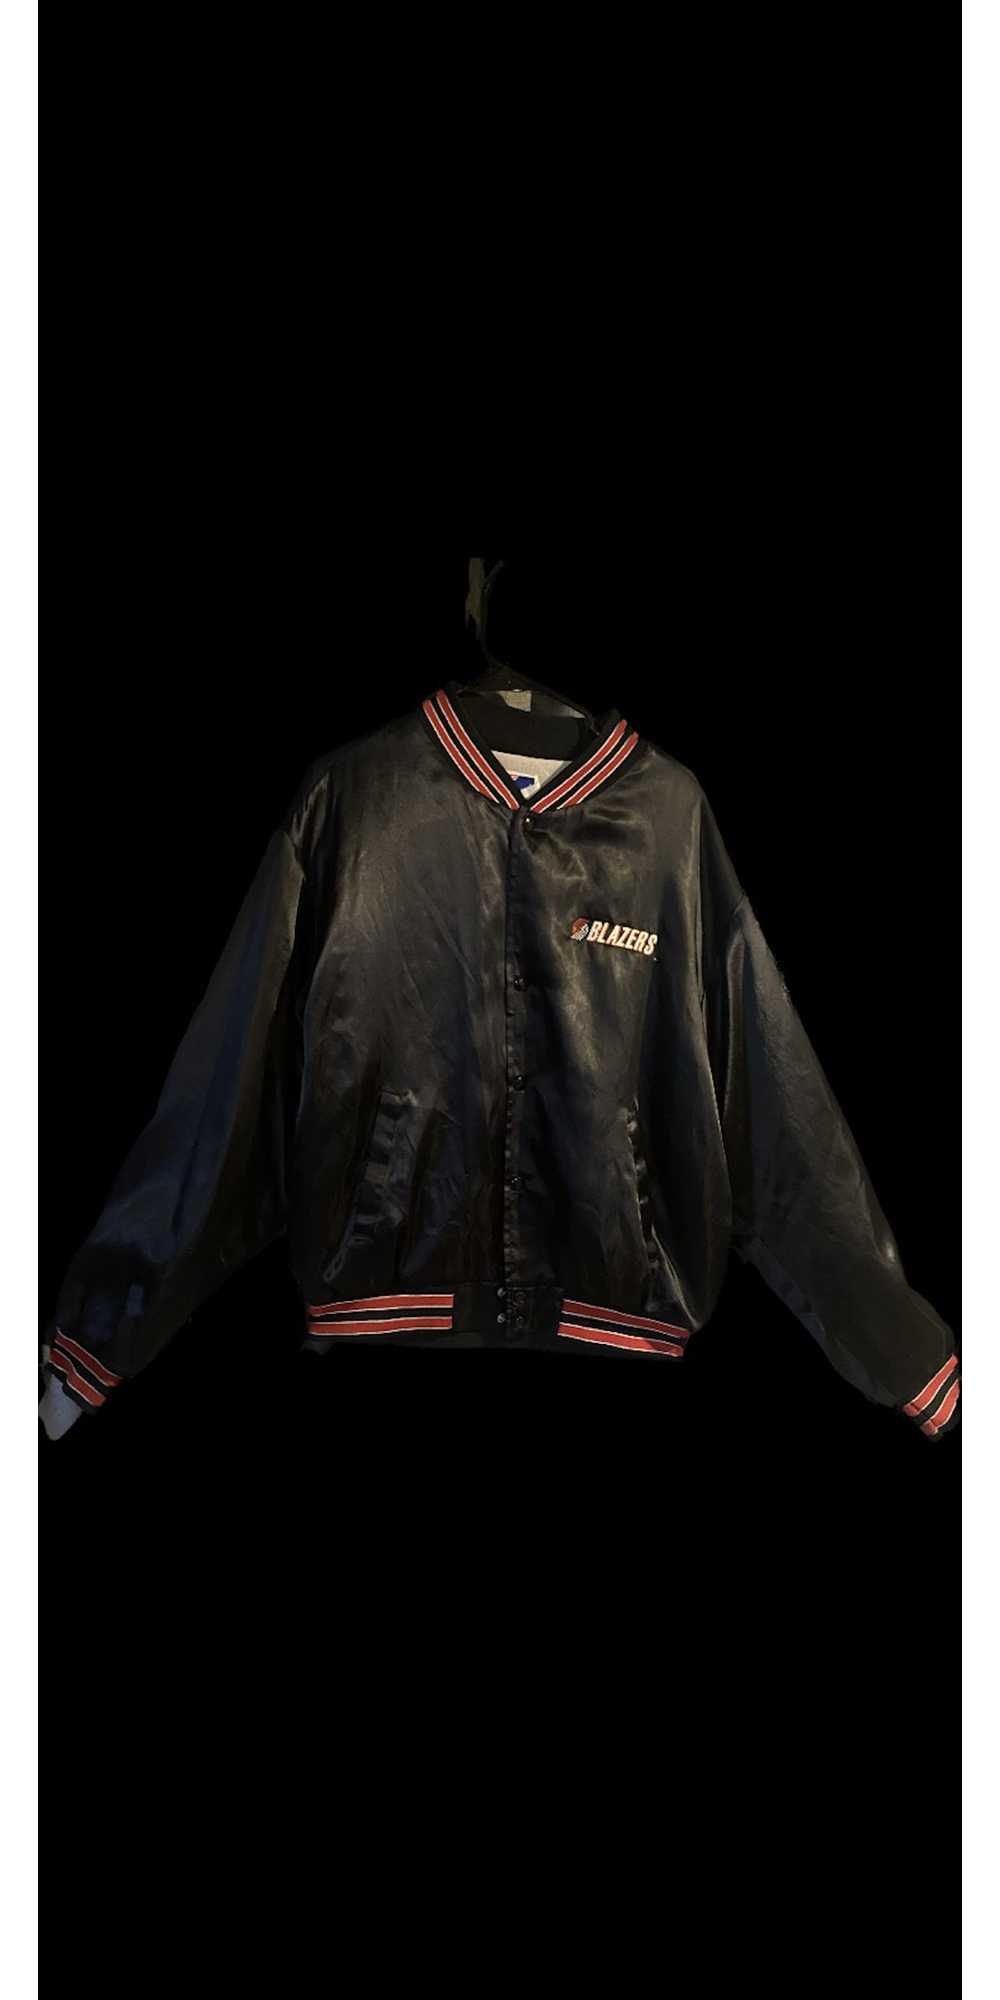 Swingster 1990’s Portland Trail Blazers jacket - image 1